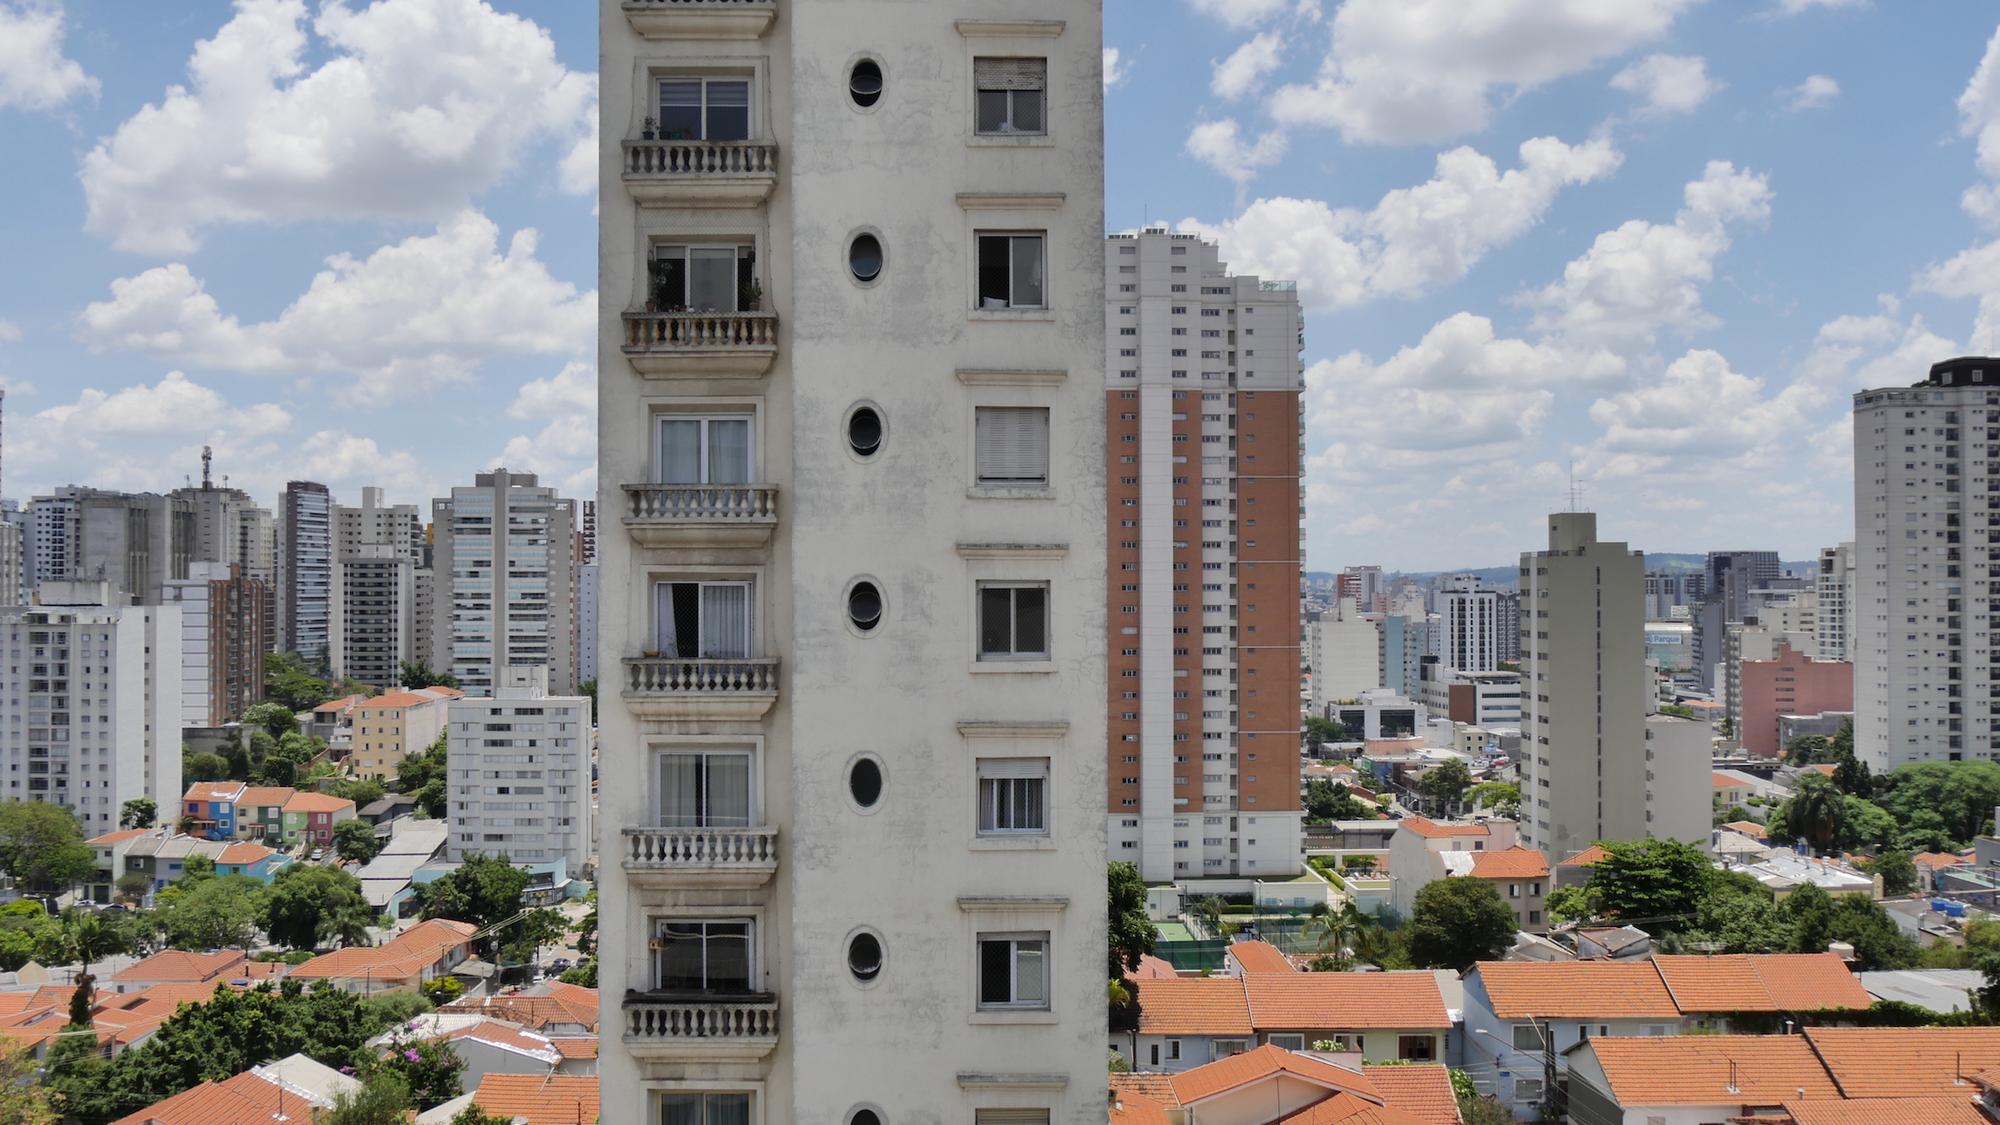 Elecciones municipales en Brasil  Sao Paulo y el derecho a la ciudad - 14